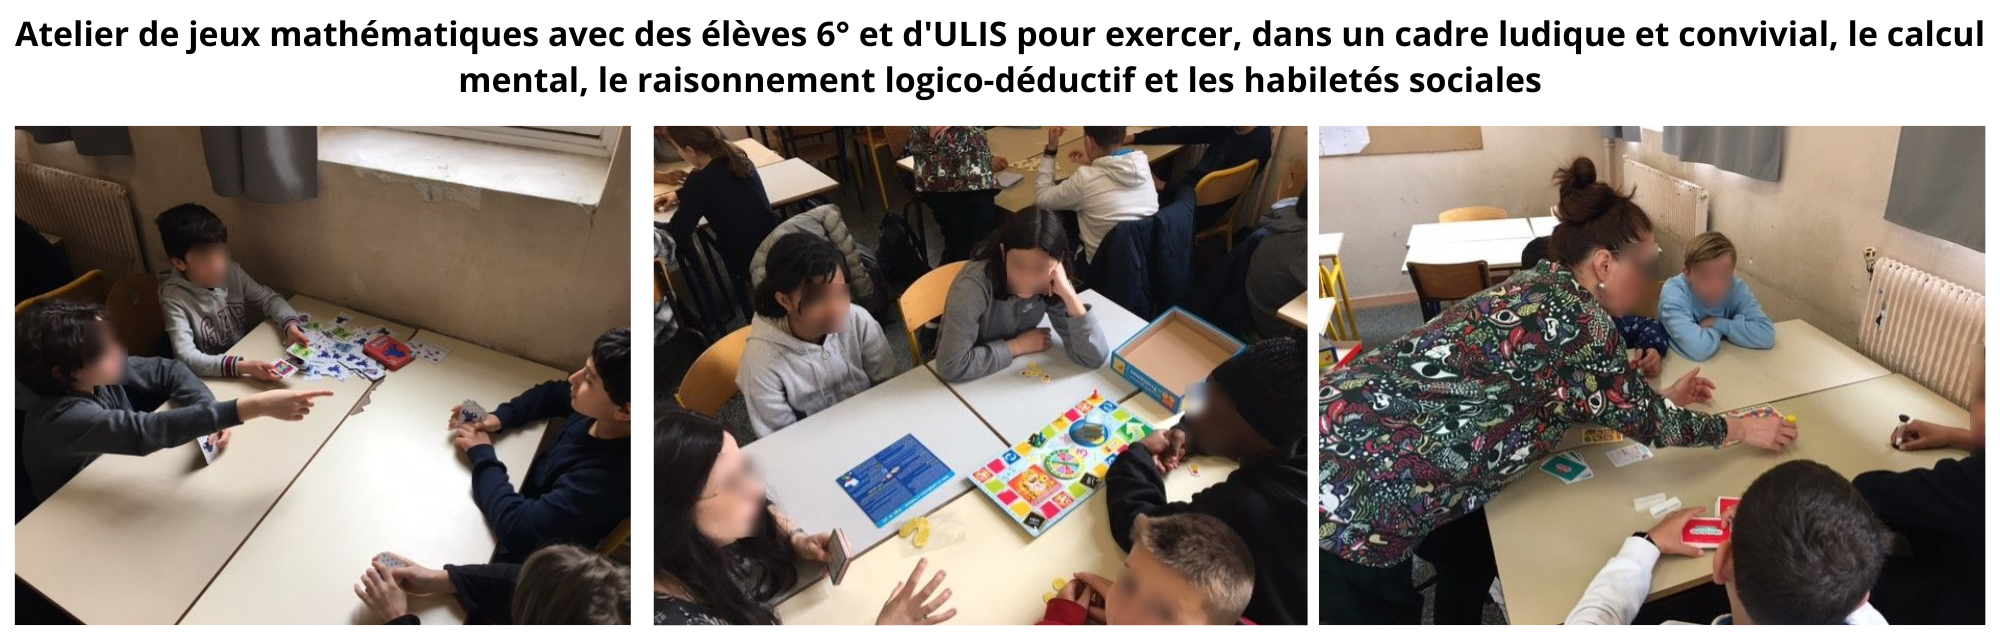 Atelier jeux mathmatiques 6me et ULIS